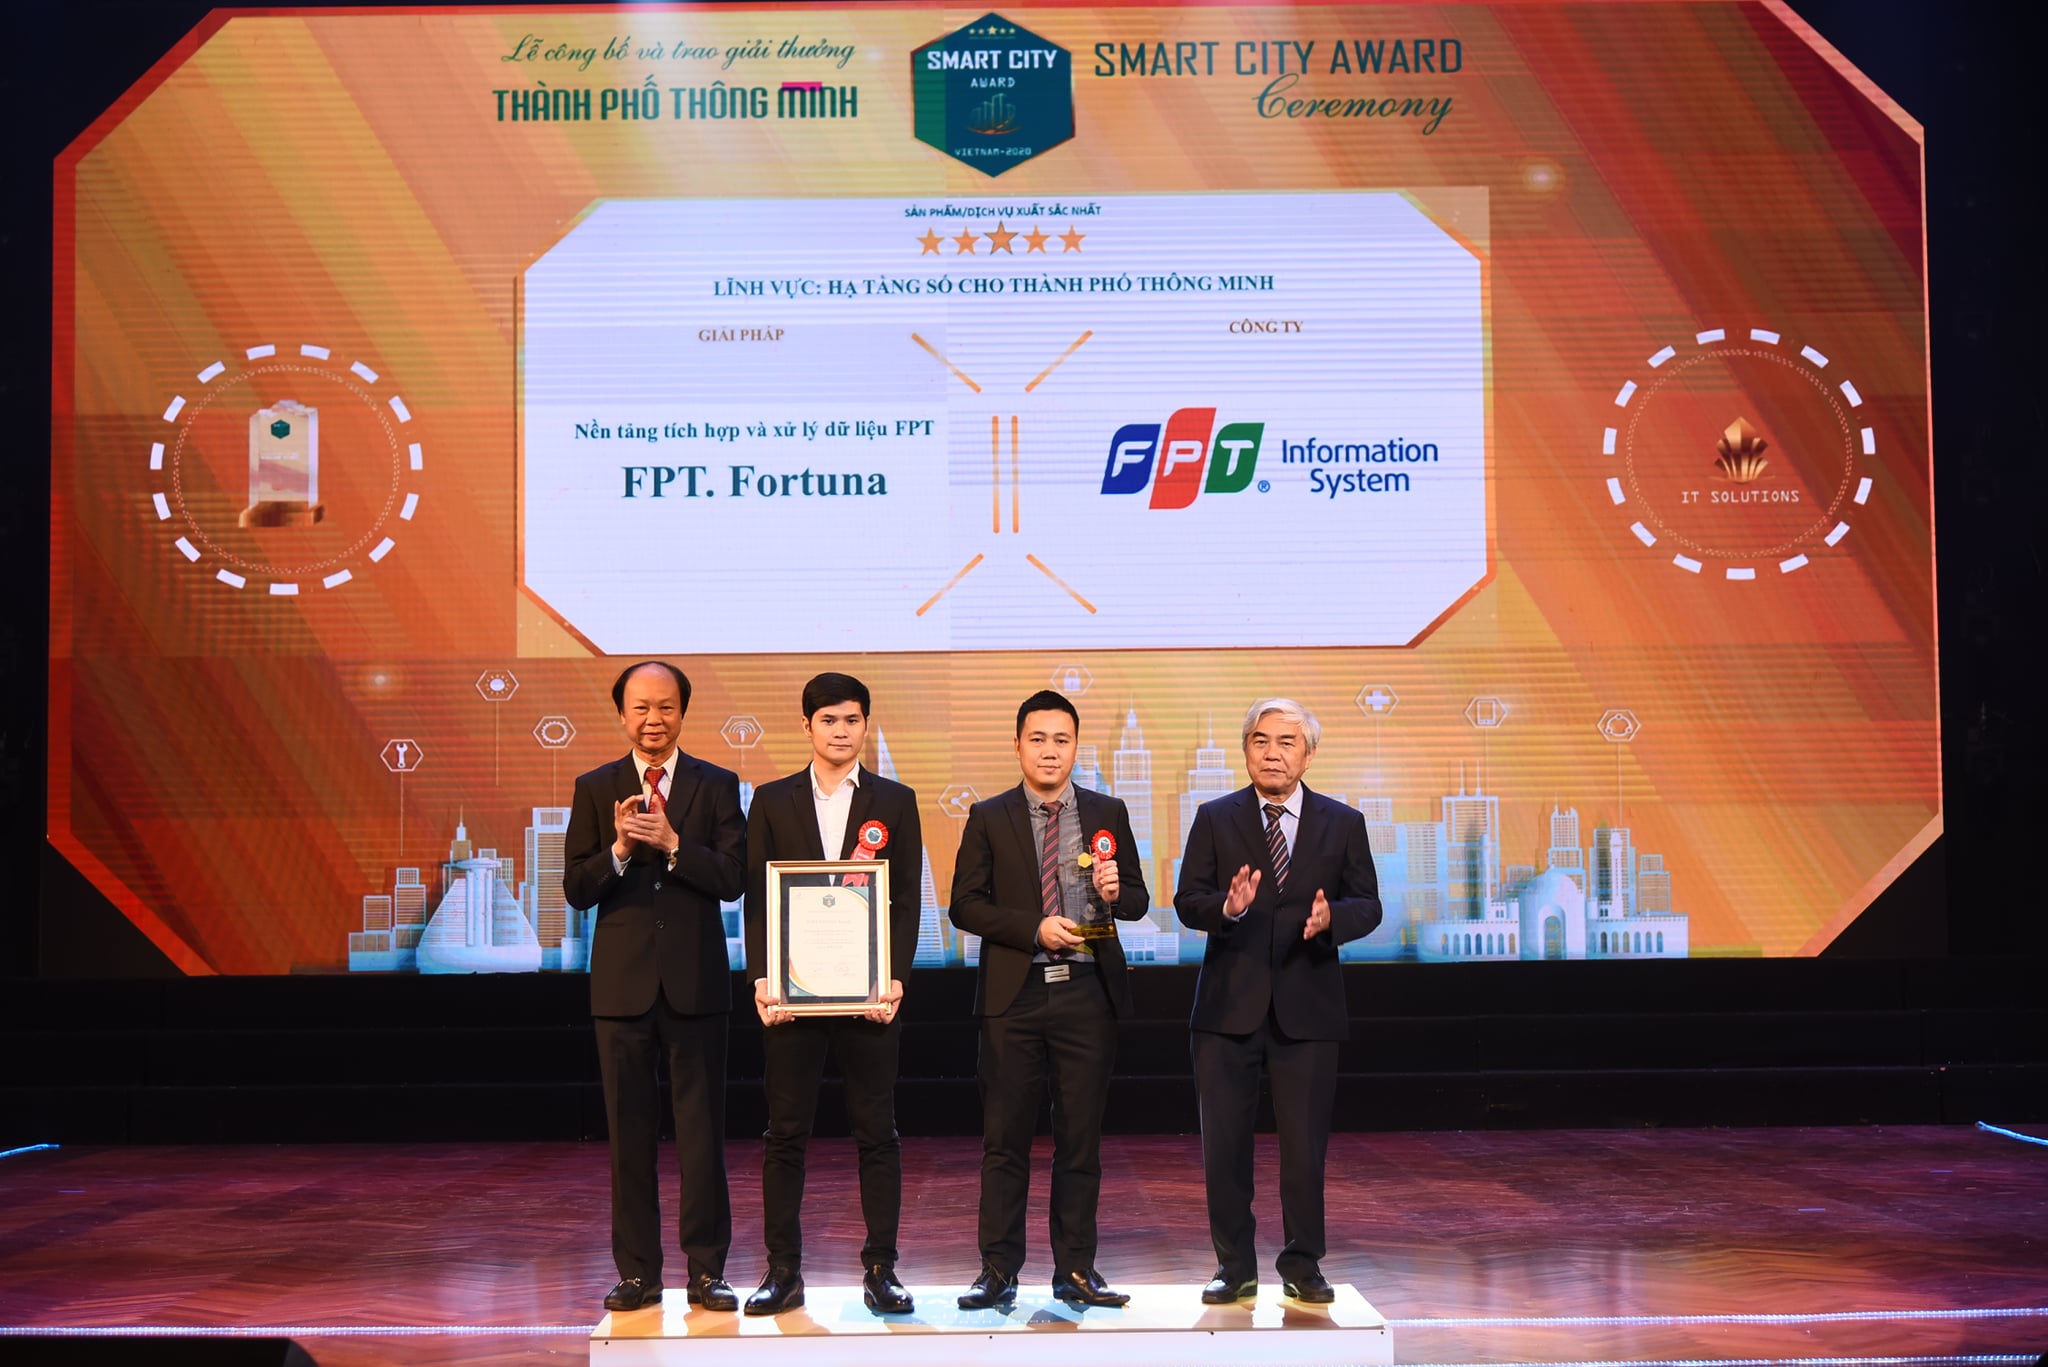 Nền tảng tích hợp và xử lý dữ liệu FPT – FPT. Fortuna đạt Giải thưởng Thành phố thông minh Việt Nam 2020 (xếp hạng 5 sao)